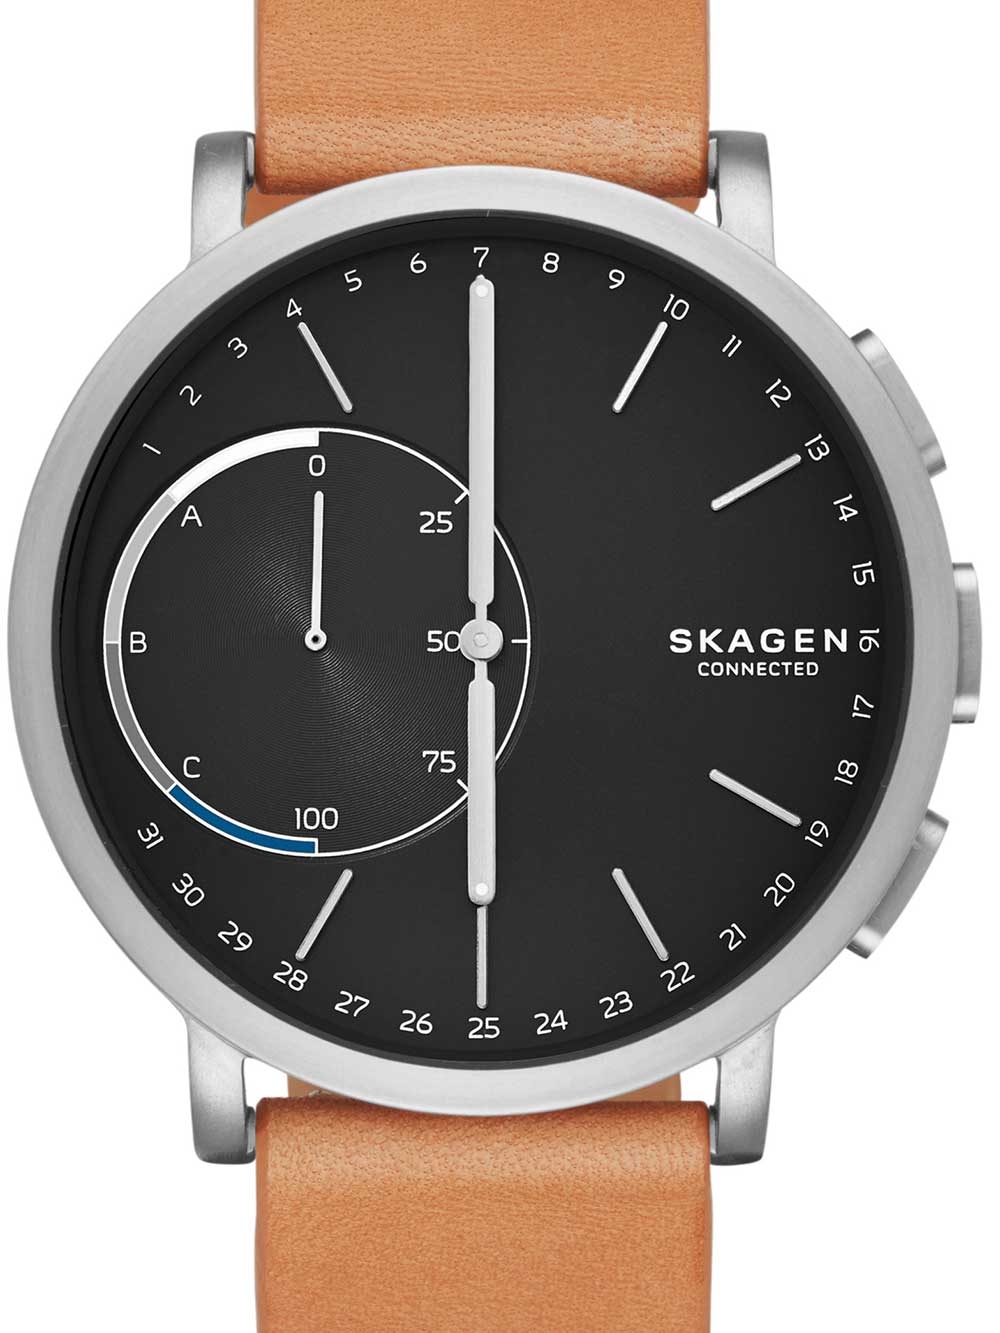 Image of Herren Hybrid Smartwatch Skagen connected Braun